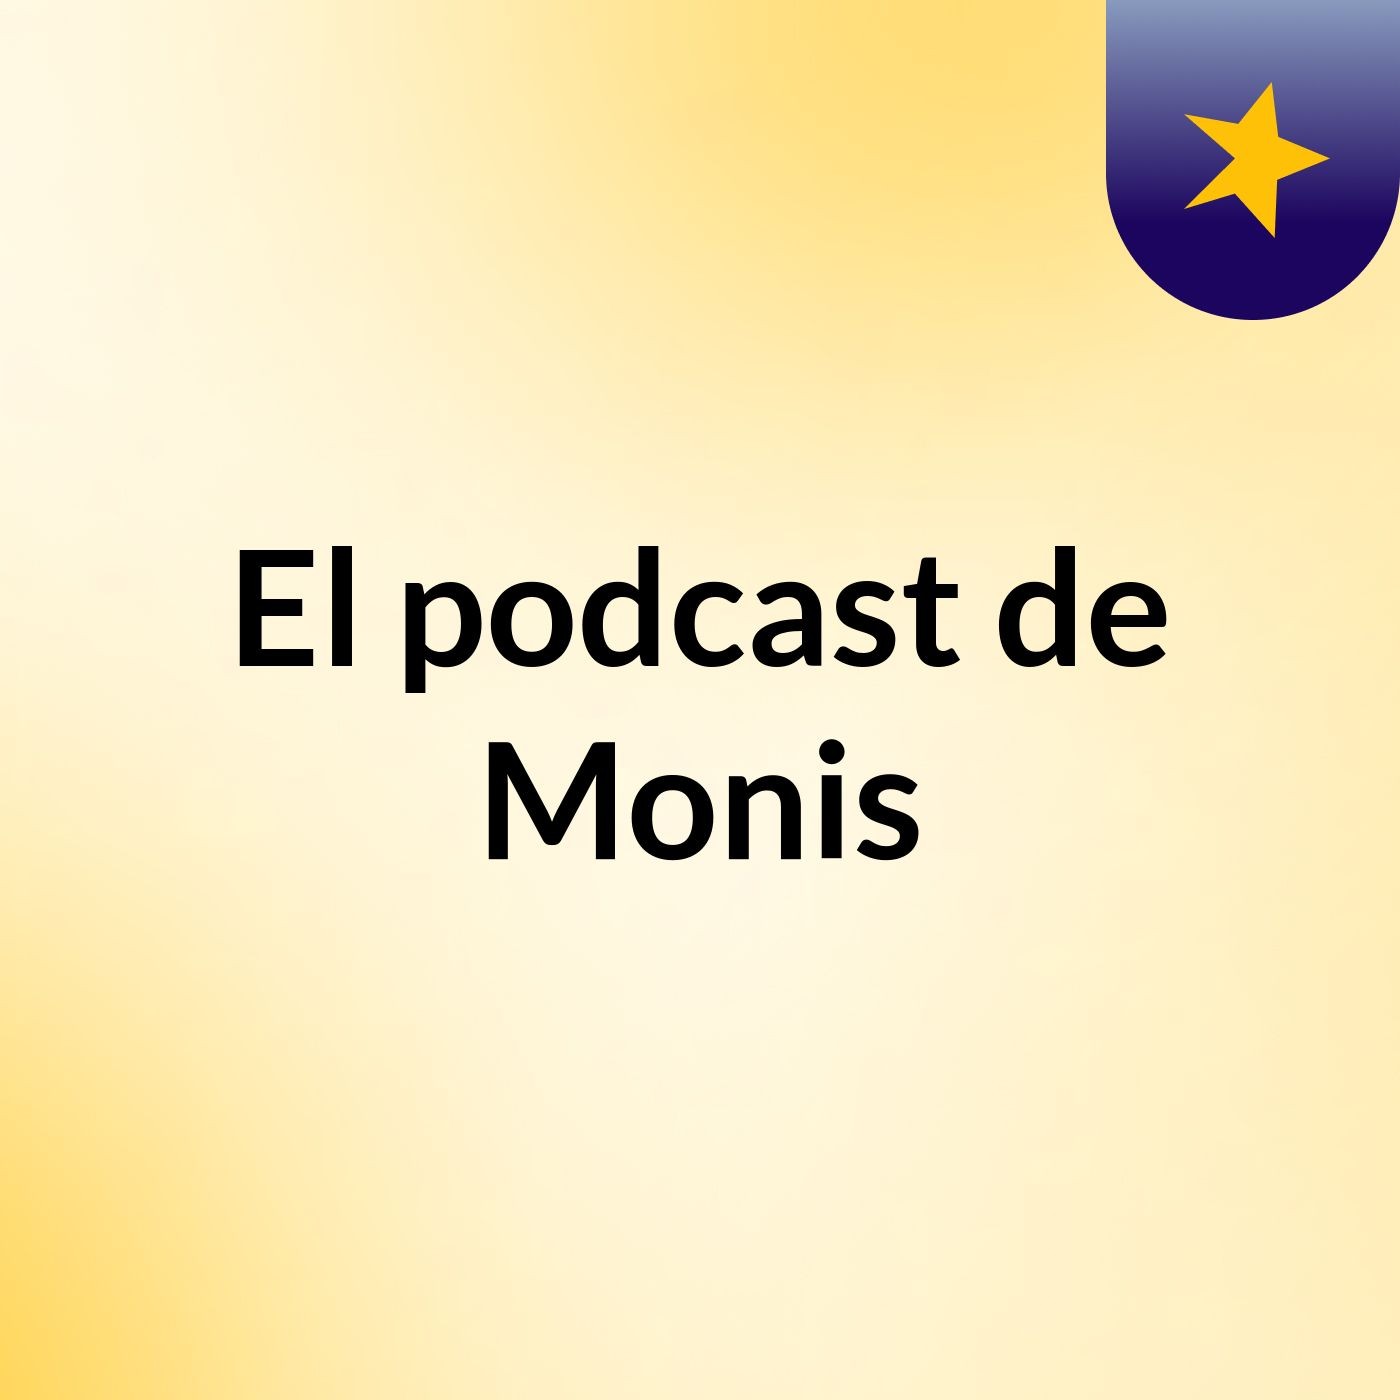 Episodio 9 - El podcast de Monis